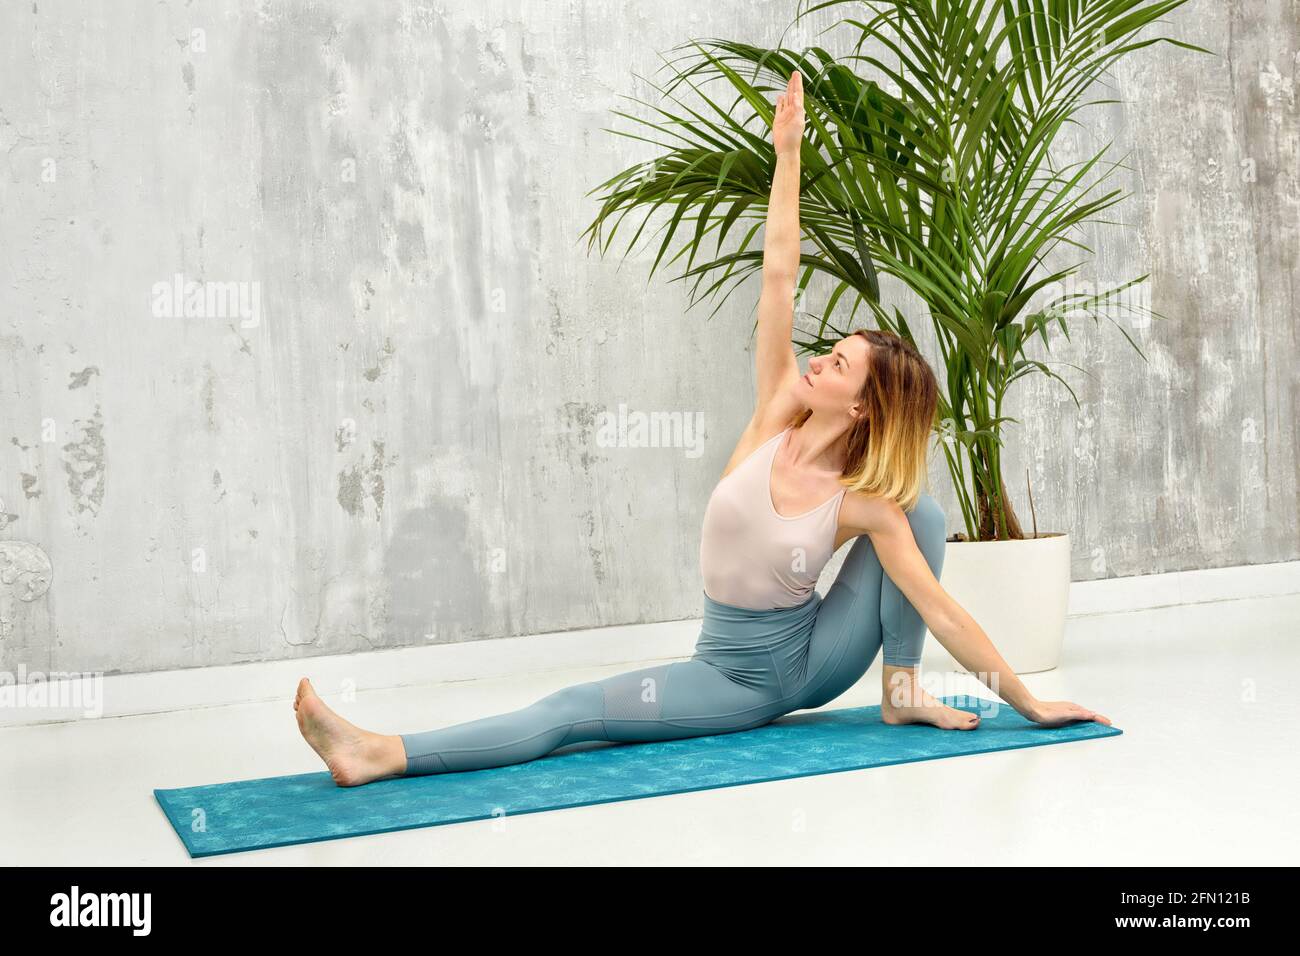 Frau, die eine Upavista Konasana Variation Yoga Pose macht, die sie dehnt Arm über ihrem Kopf mit einer grauen Wand und vergossen Pflanze Hintergrund in einer Gesundheit und fitn Stockfoto